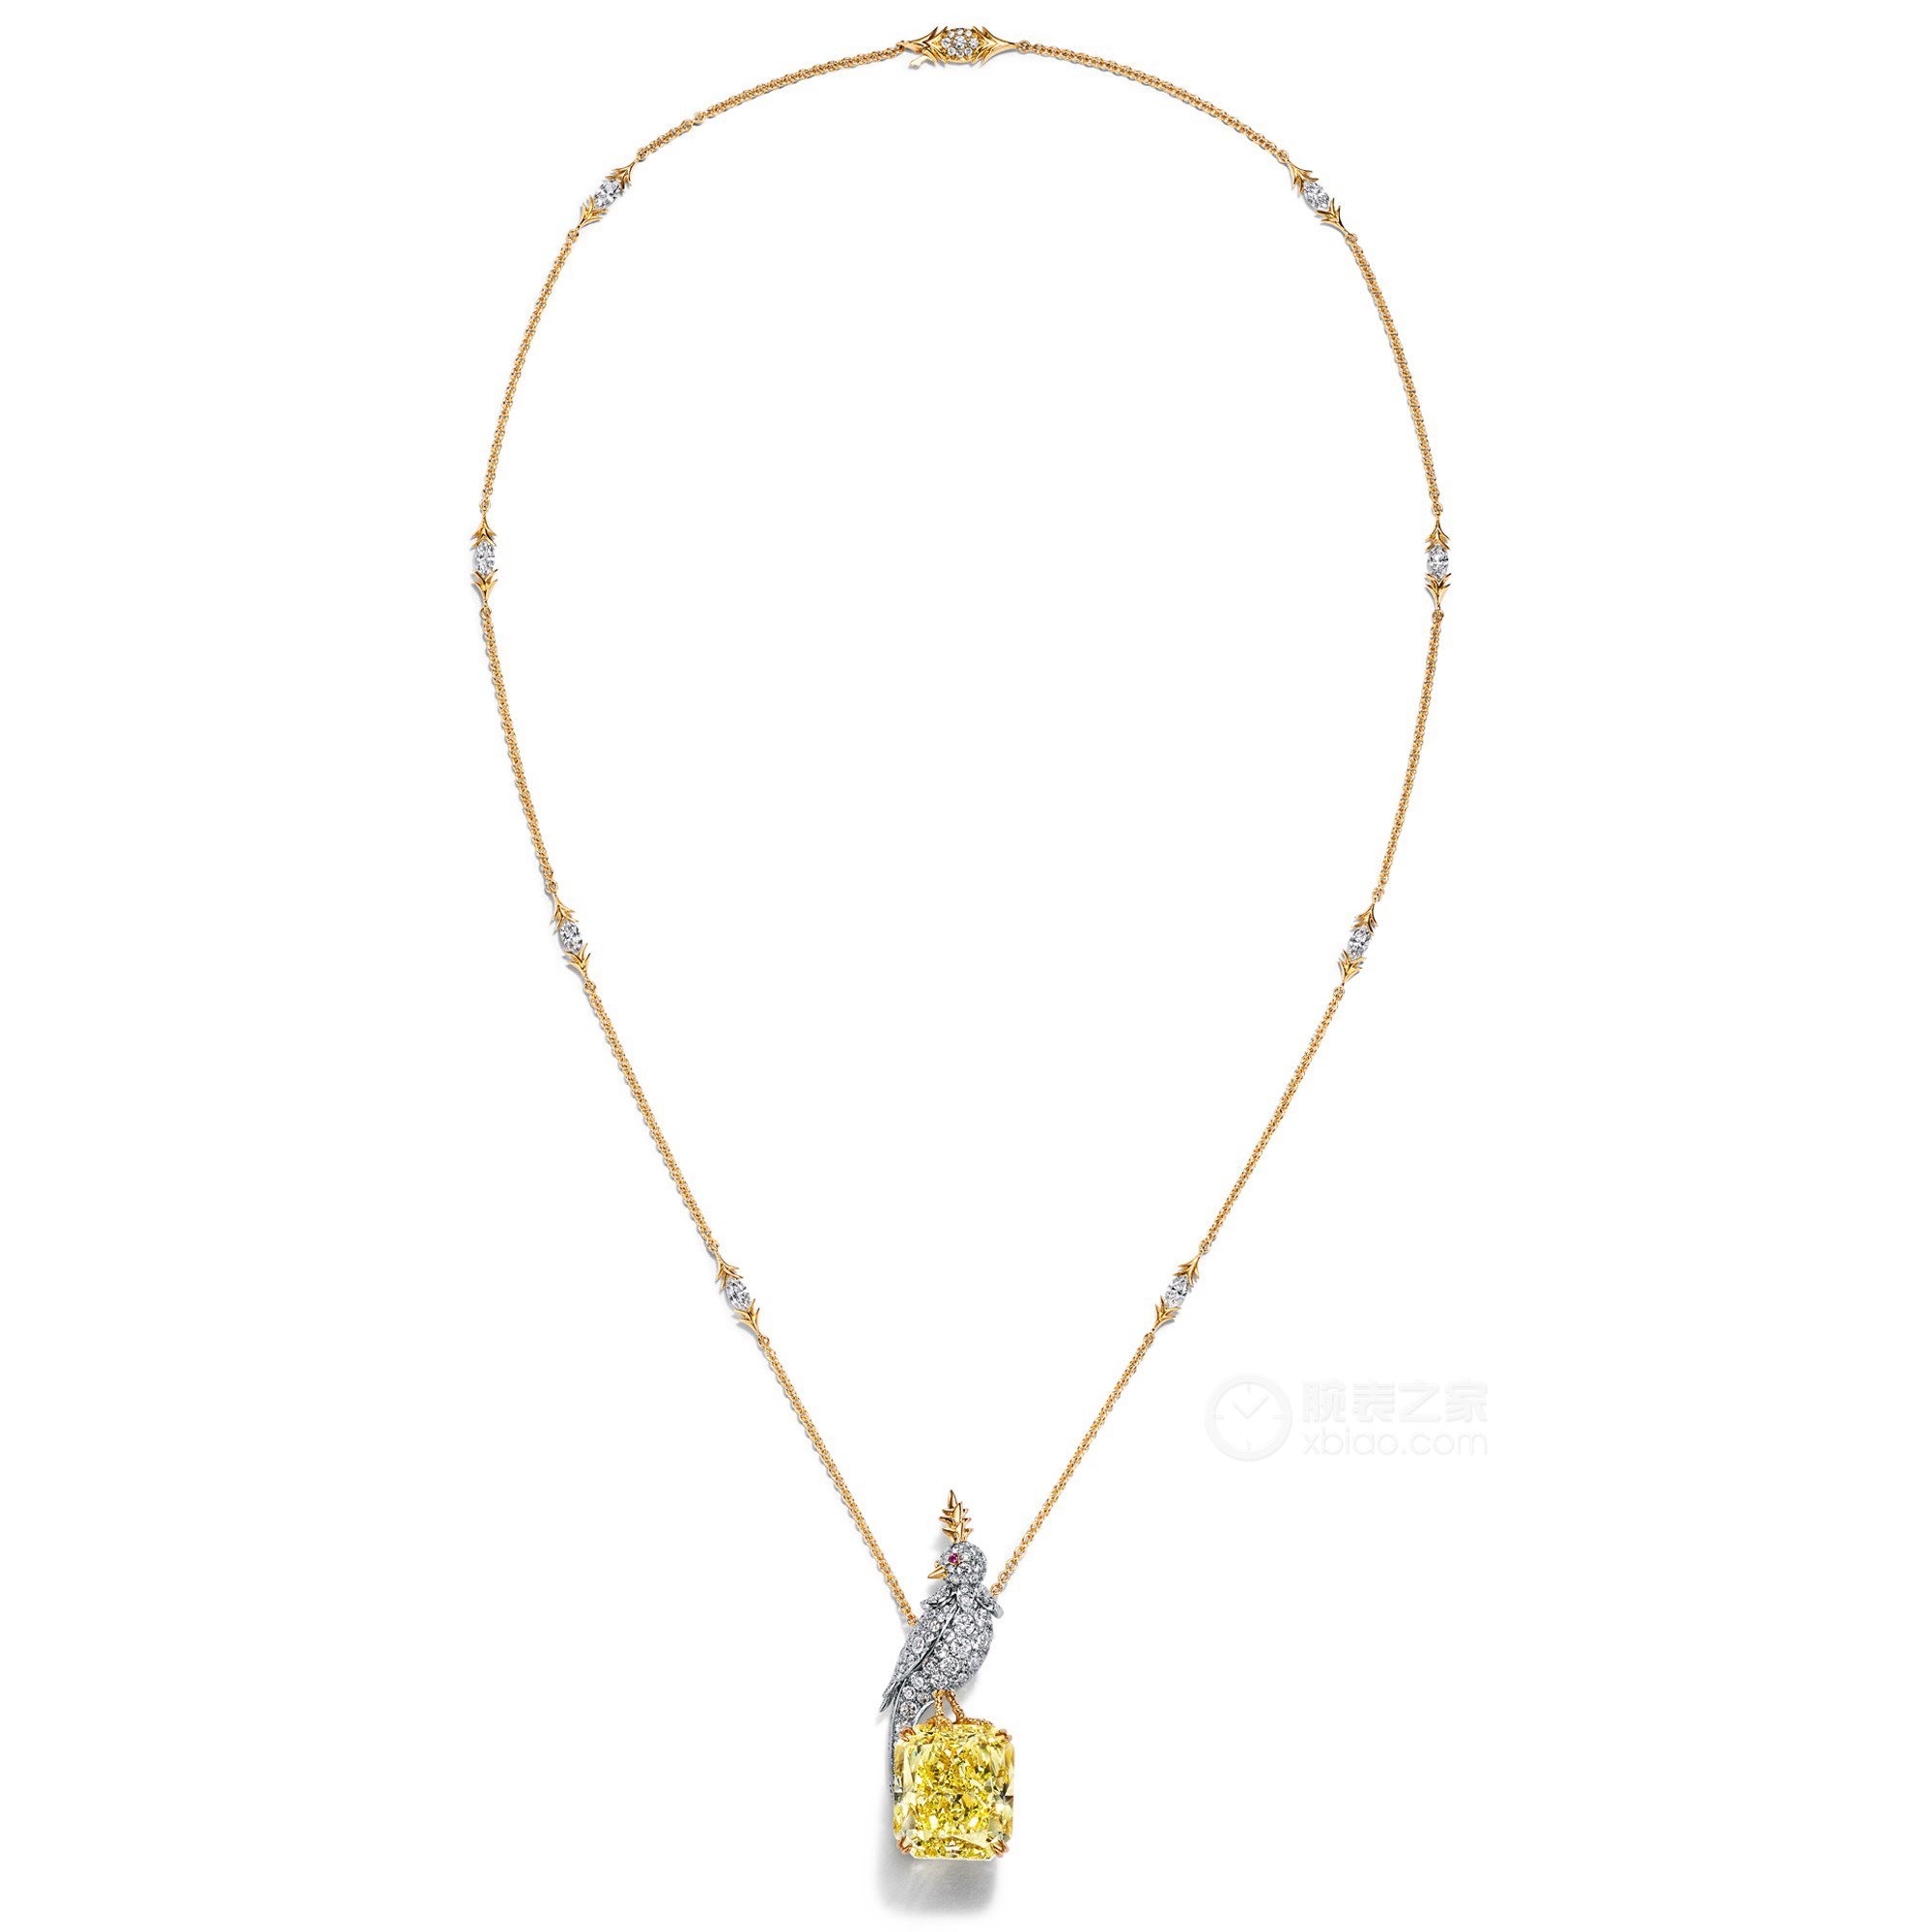 蒂芙尼史隆伯杰系列铂金及18K黄金镶嵌一颗重逾28克拉的浓彩黄钻，粉色蓝宝石及钻石“石上鸟”项链项链